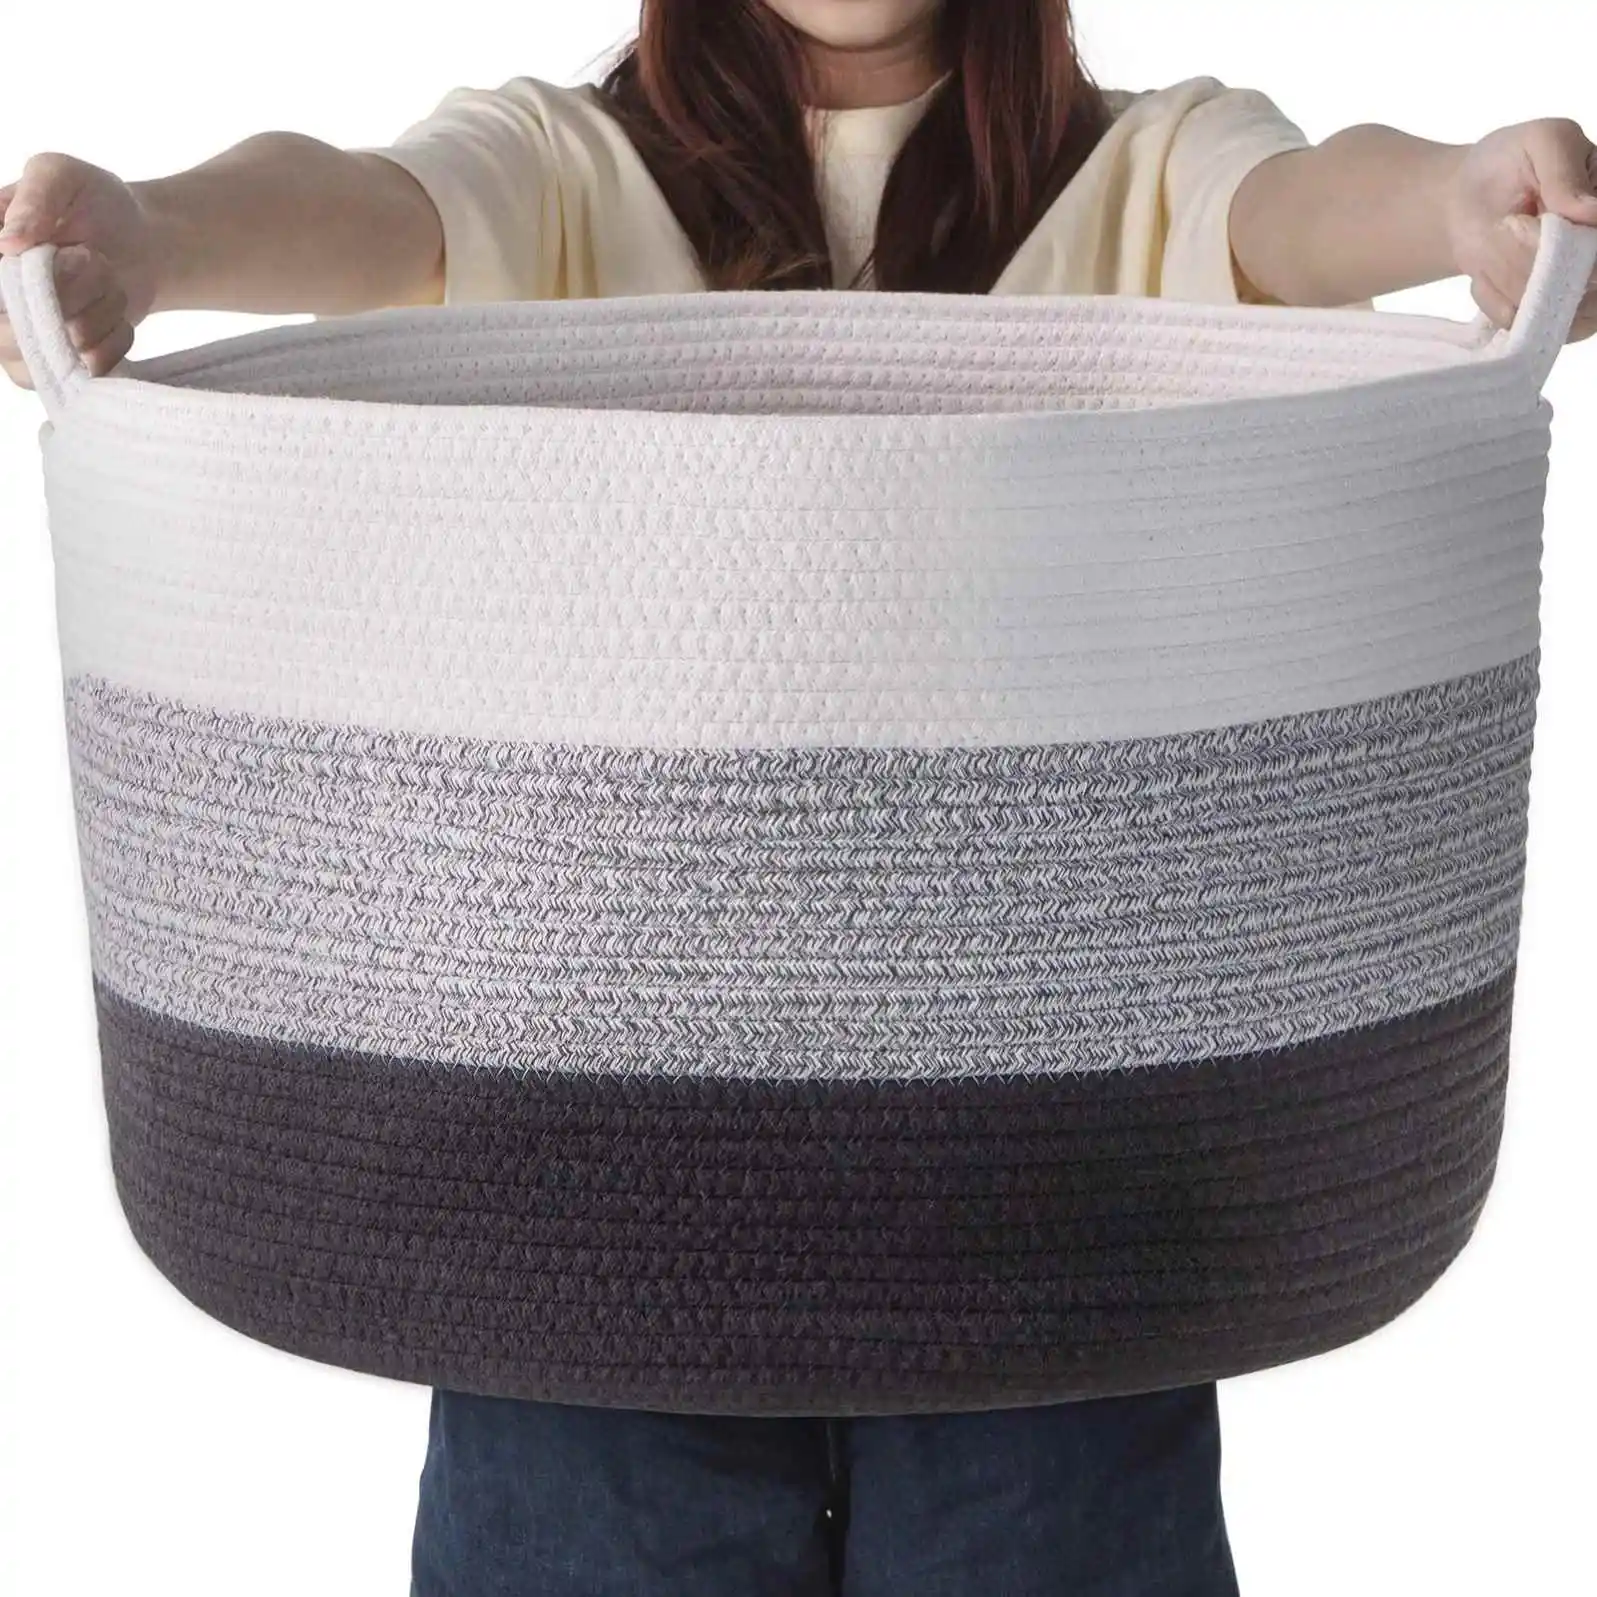 Large Cotton Rope Storage Basket Baby Laundry Woven hamper Nursery Toy Basket Bedroom Living Room Floor Blanket Baskets 87L